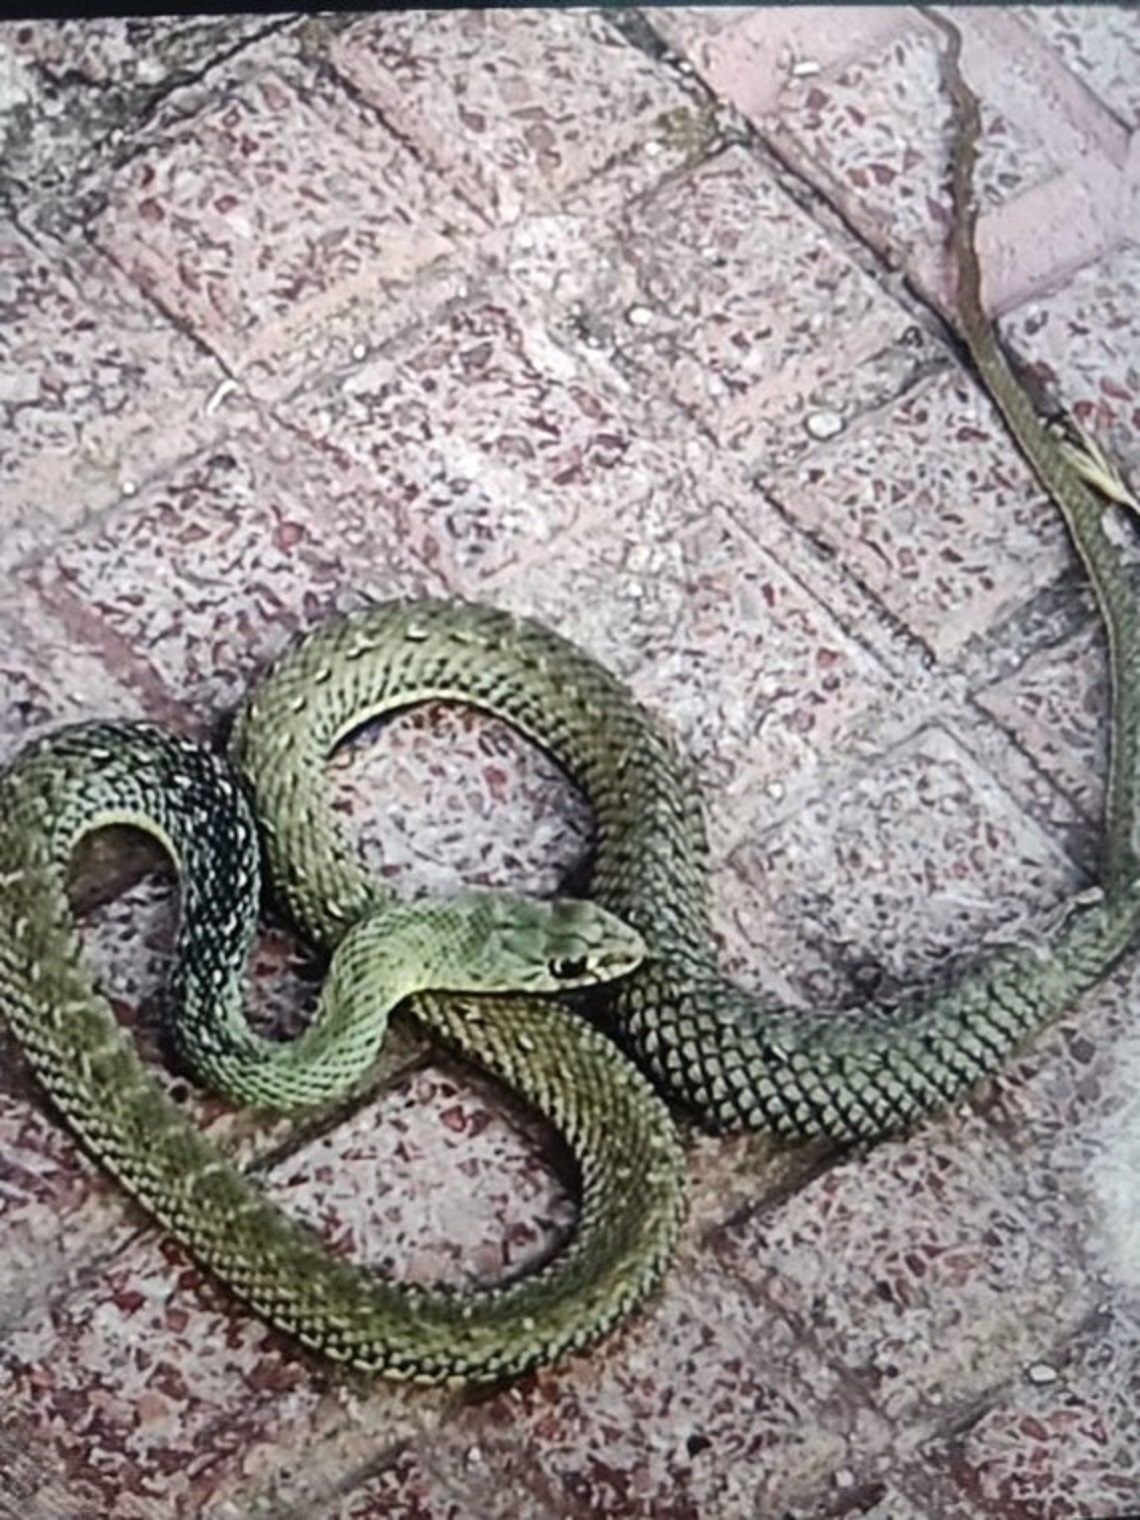 La Policía Local de Torrejón de Ardoz recoge una serpiente